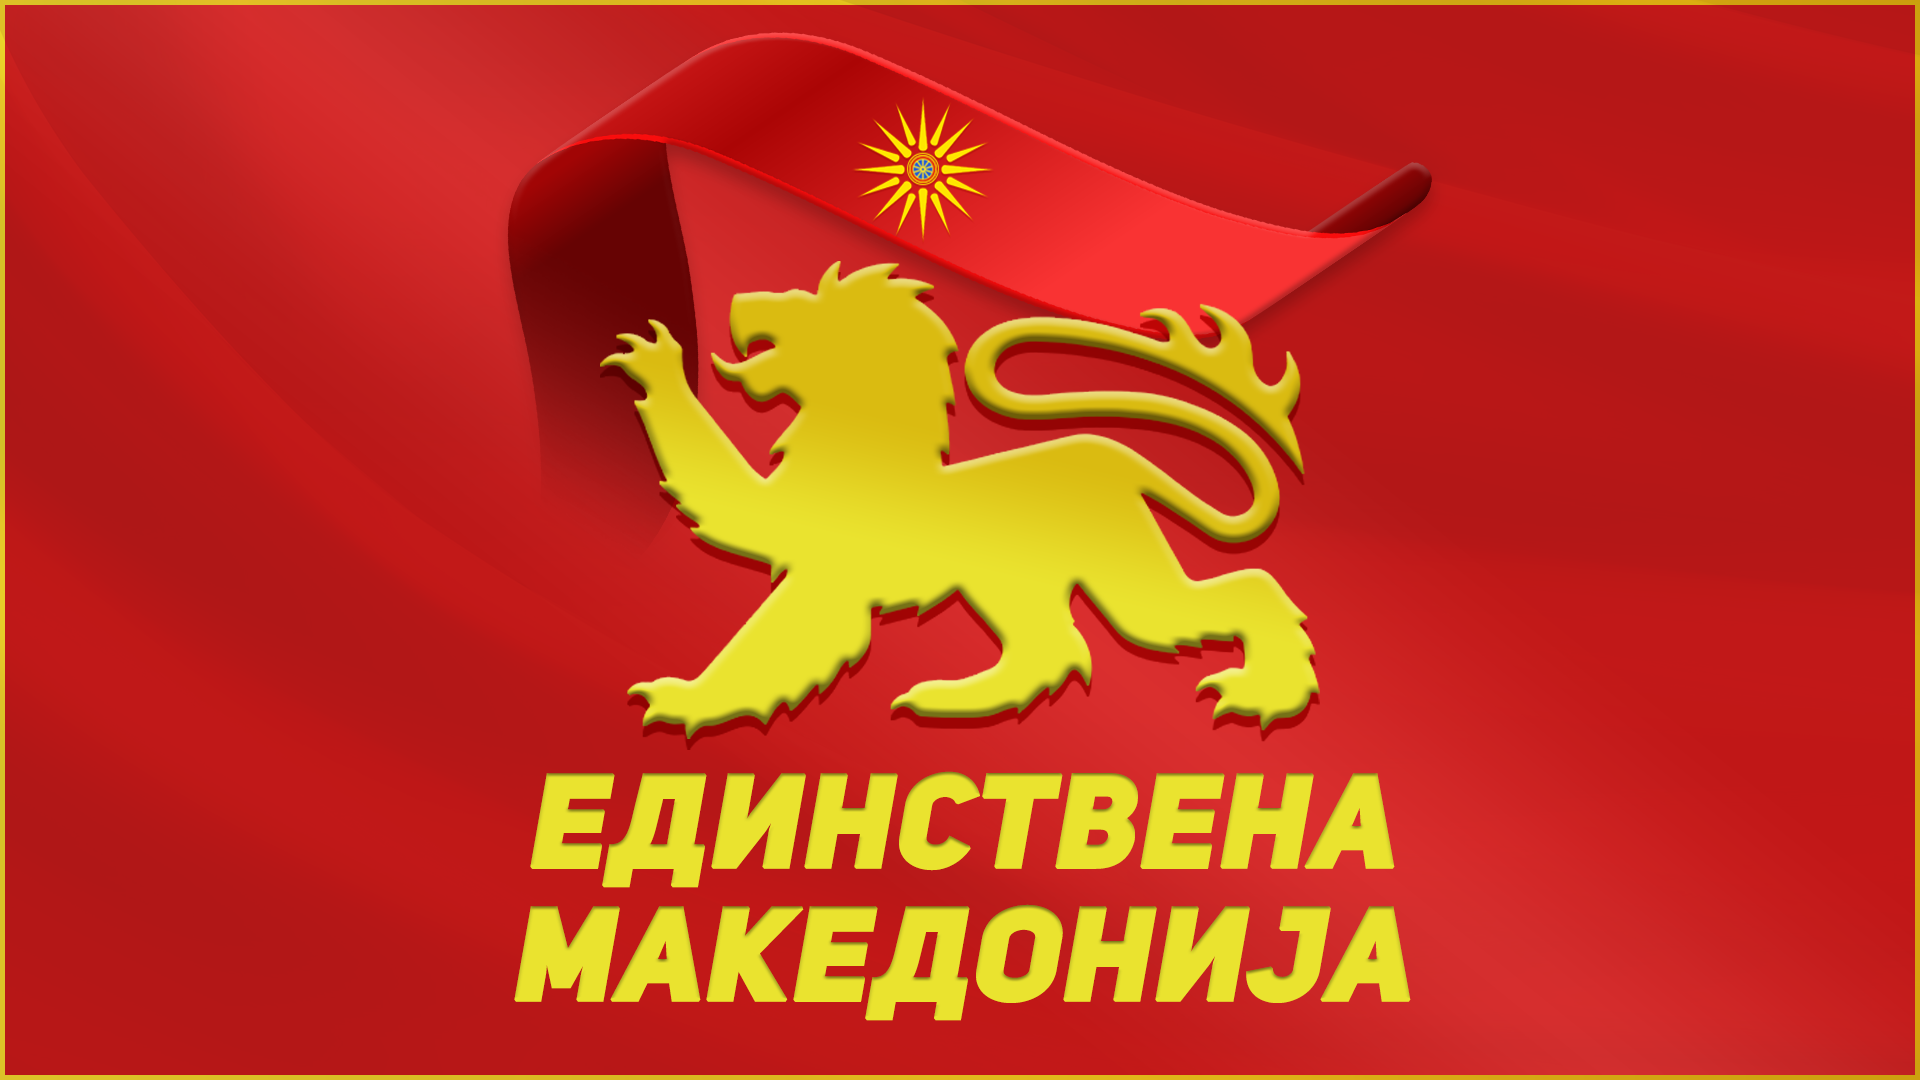 Единствена Македонија: Денес е тажен и тежок ден - три години од приемот во НАТО и бришењето на се што е македонско